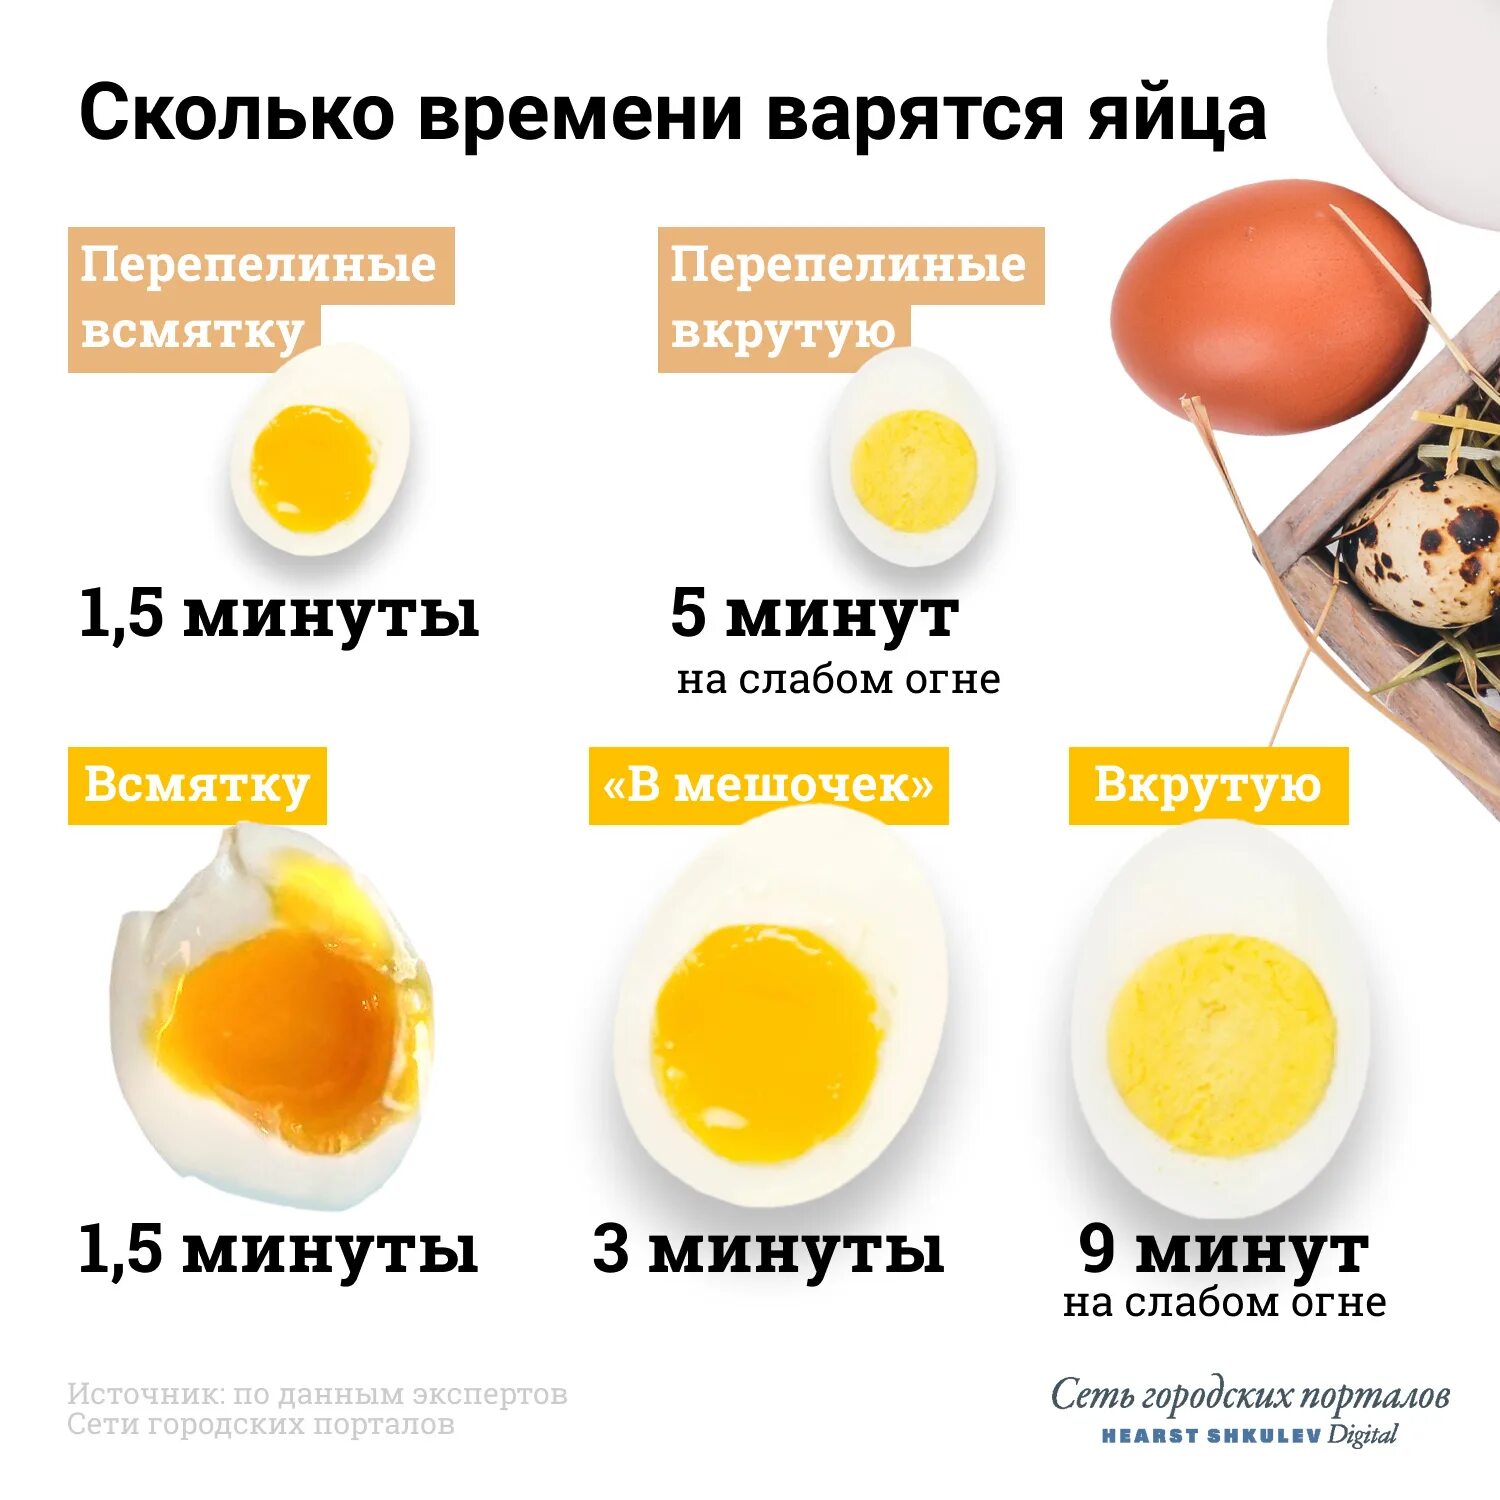 Яйца вкрутую в холодной воде. Яйцо всмятку яйца вкрутую. Яйца всмятку в мешочек и вкрутую. Сколько варить яйца. Сколько варить яйца всмятку.